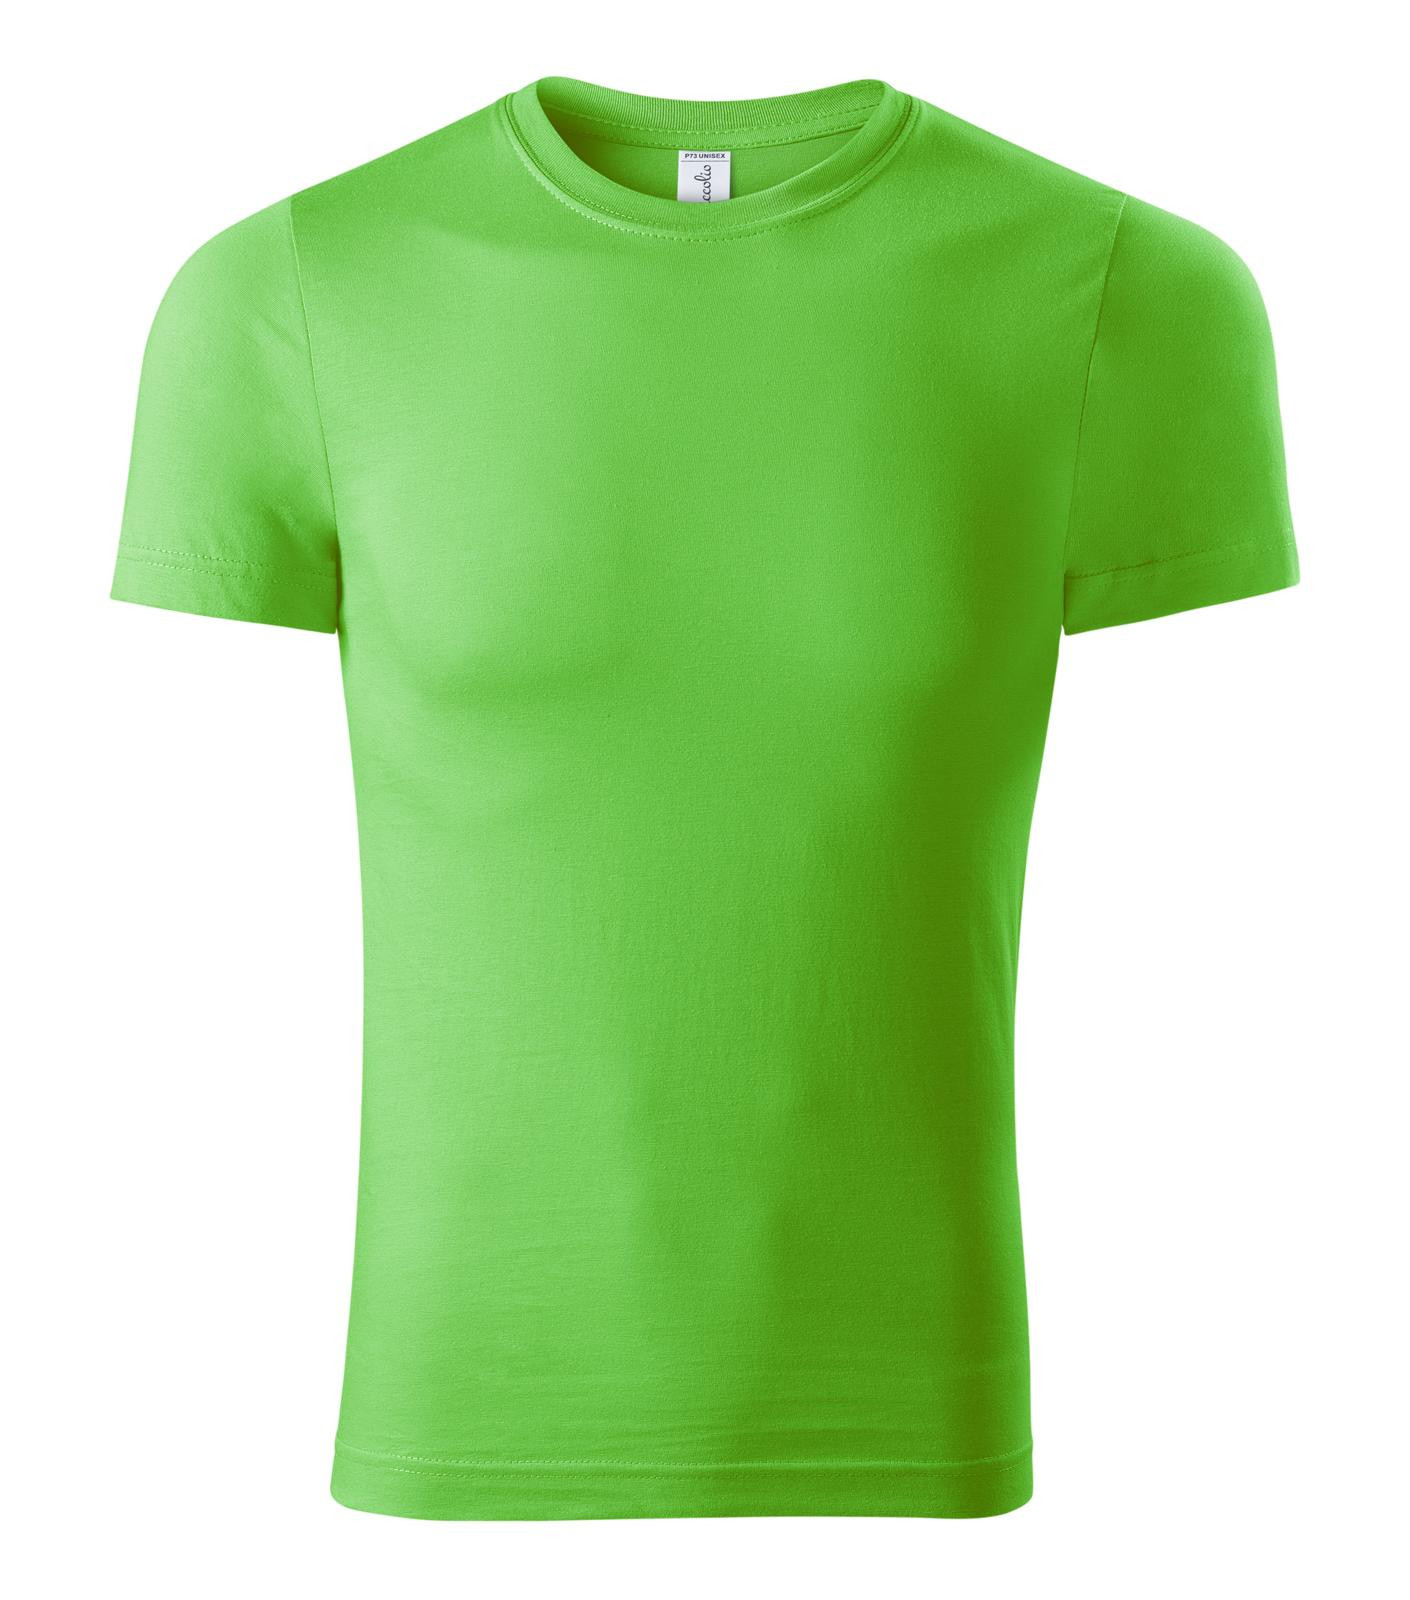 Unisex tričko Piccolio Paint P73 - veľkosť: 4XL, farba: zelené jablko